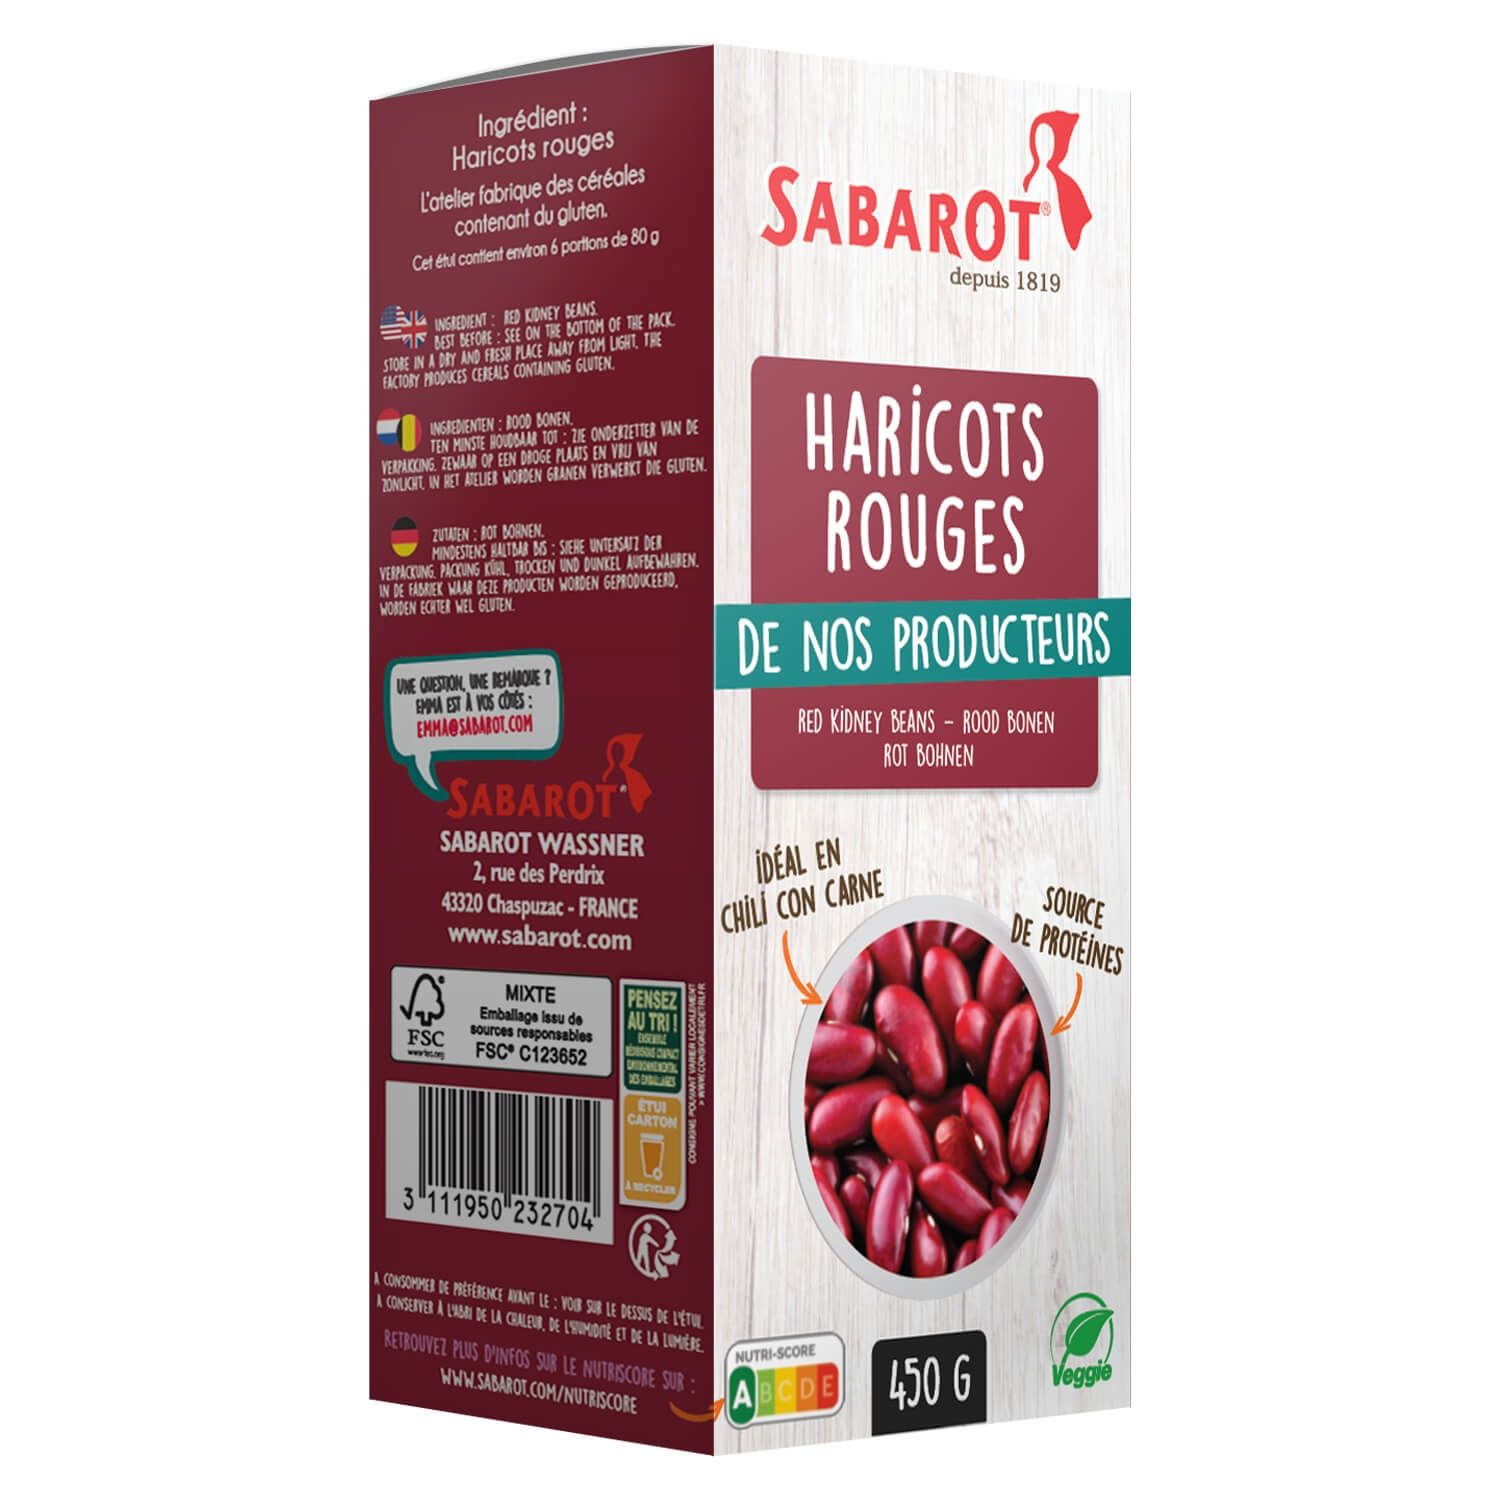 Haricots rouges paquet de 450g Sabarot